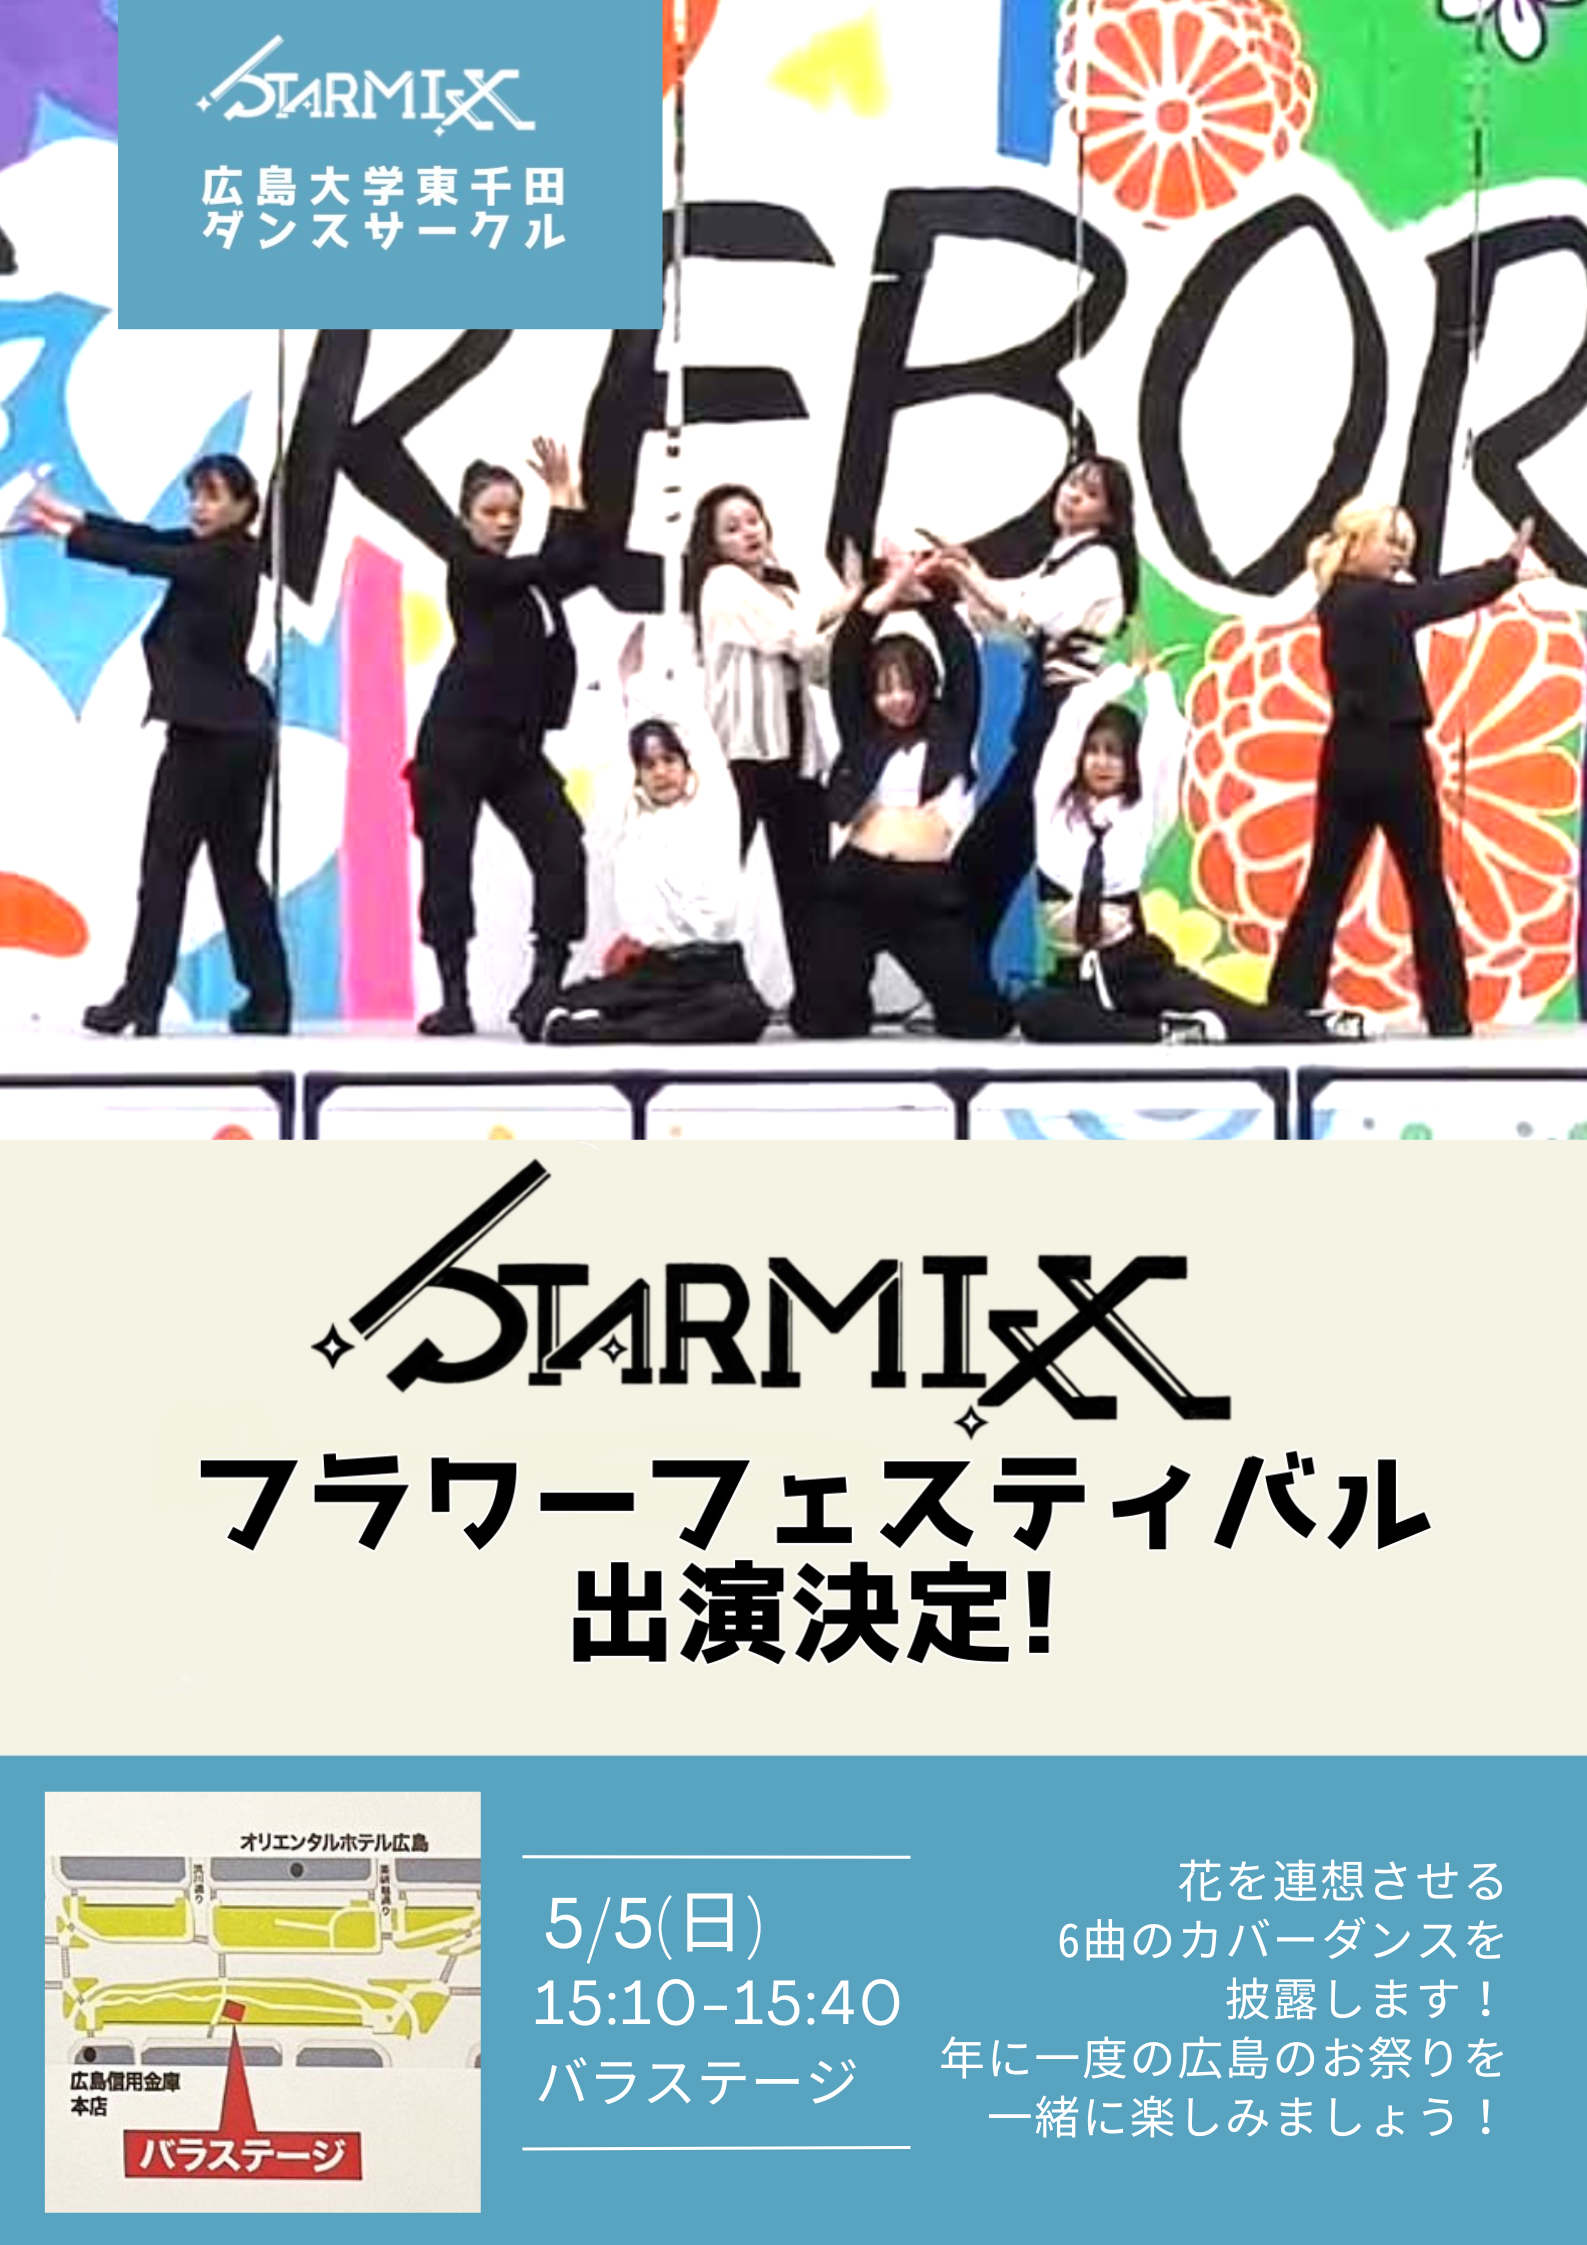 STARMIXXがフラワーフェスティバルに出演します！【STARMIXX】